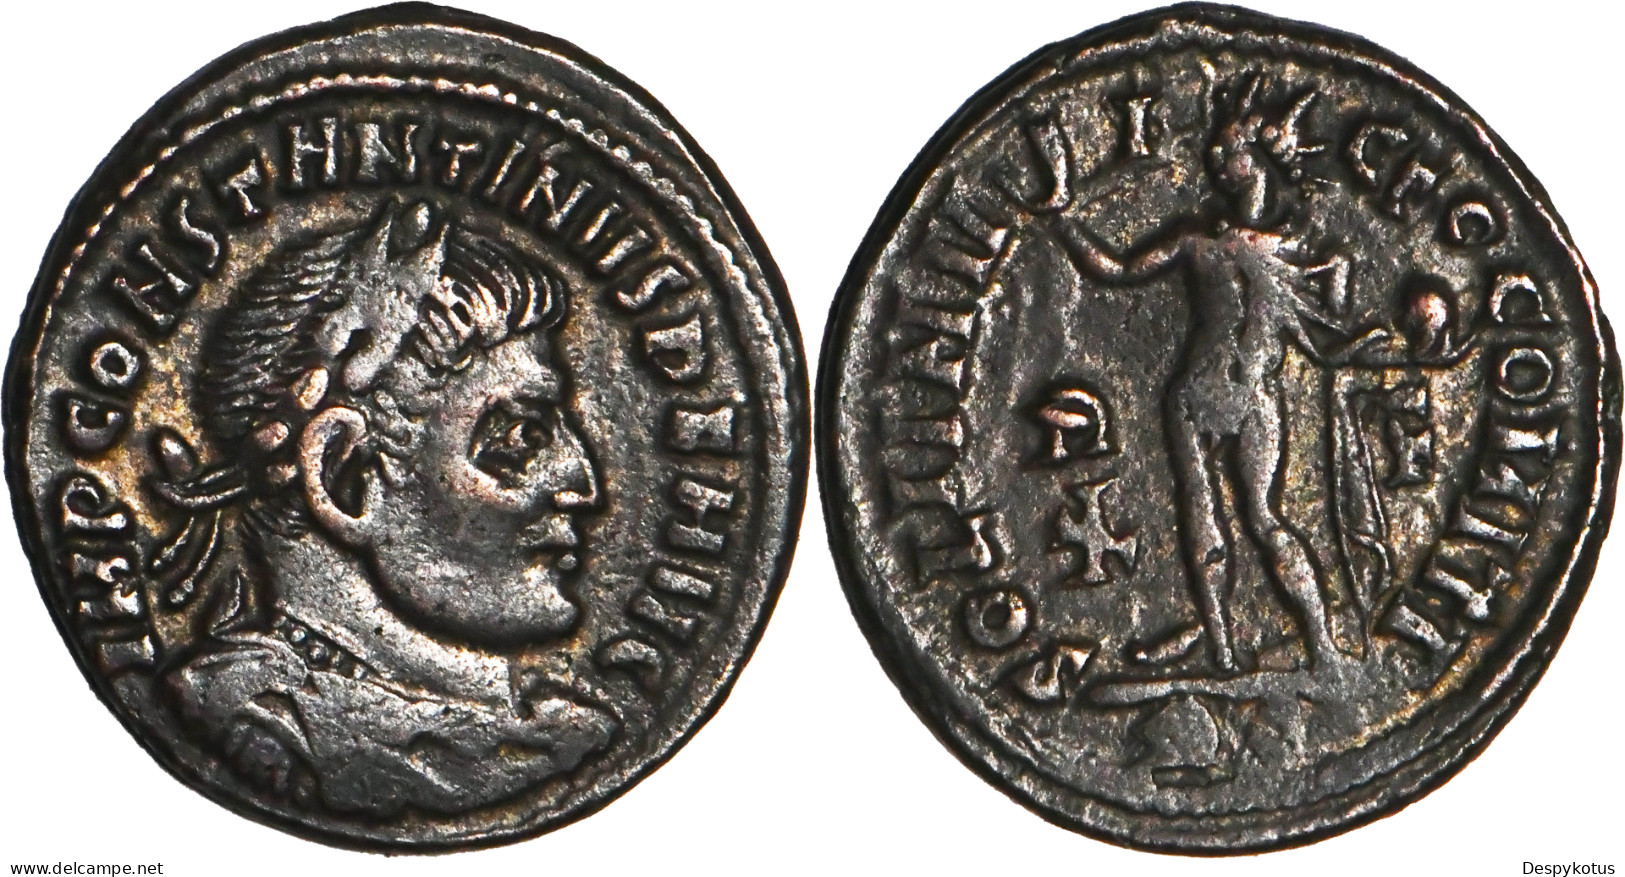 ROME - Centenionalis - CONSTANTIN I - SOLI INVICTO - ROME (RP) - 317 AD - RIC.27 - 19-142 - The Christian Empire (307 AD To 363 AD)